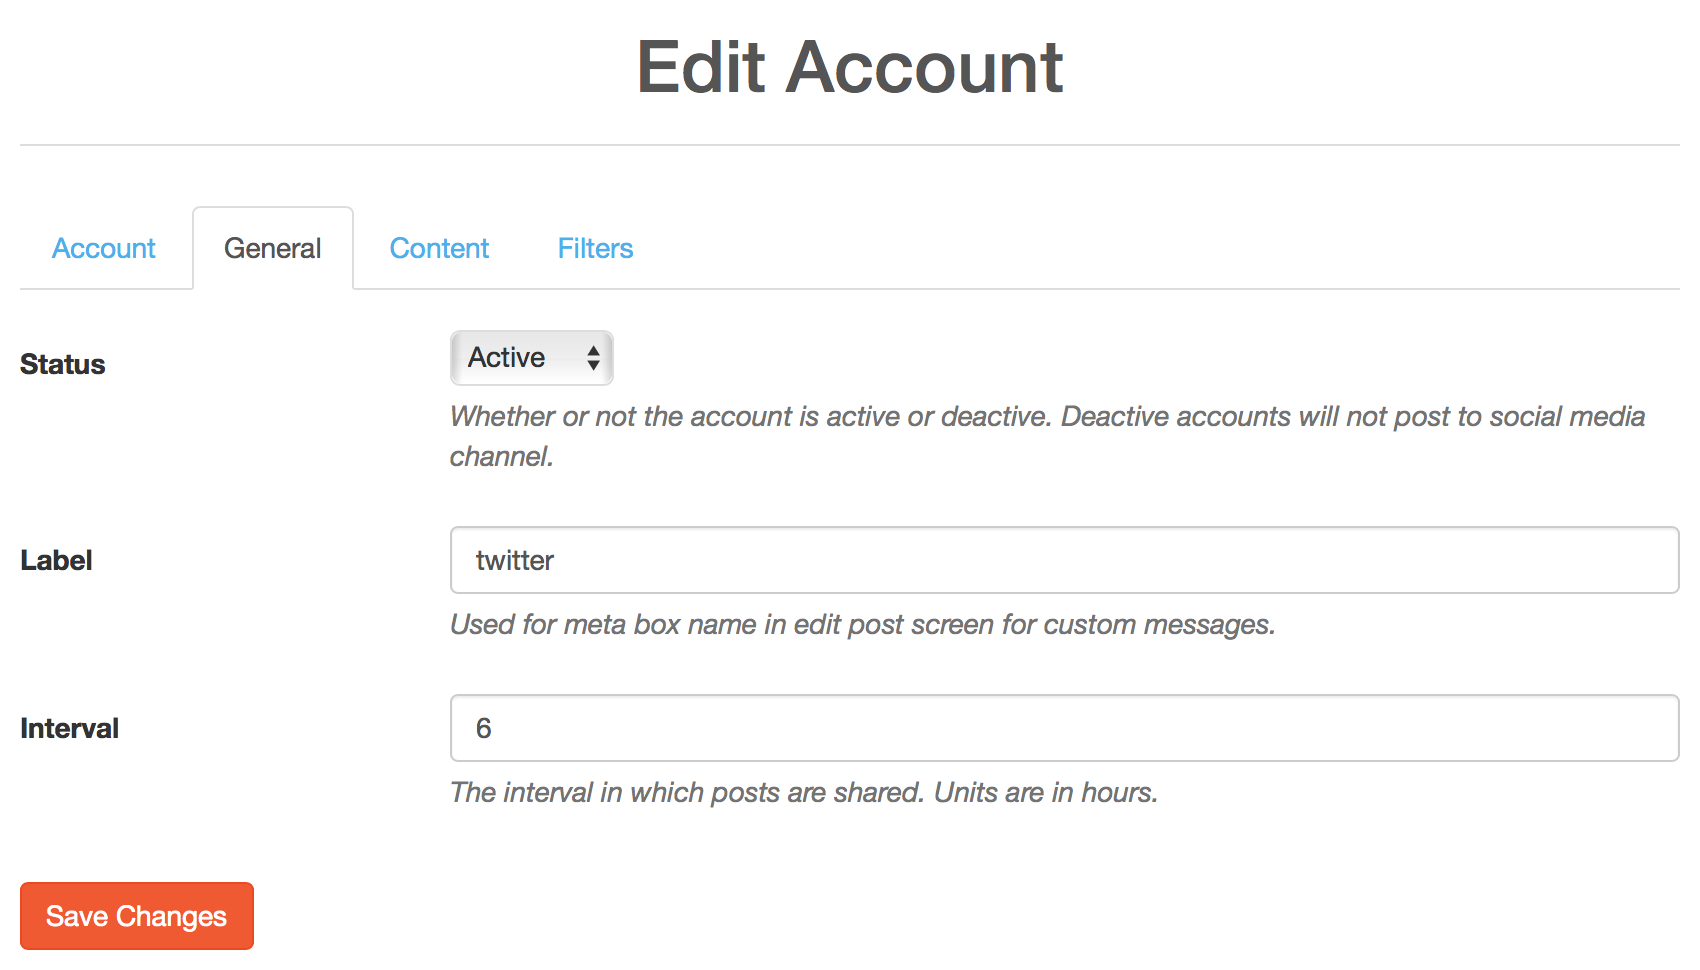 Edit account’s general settings